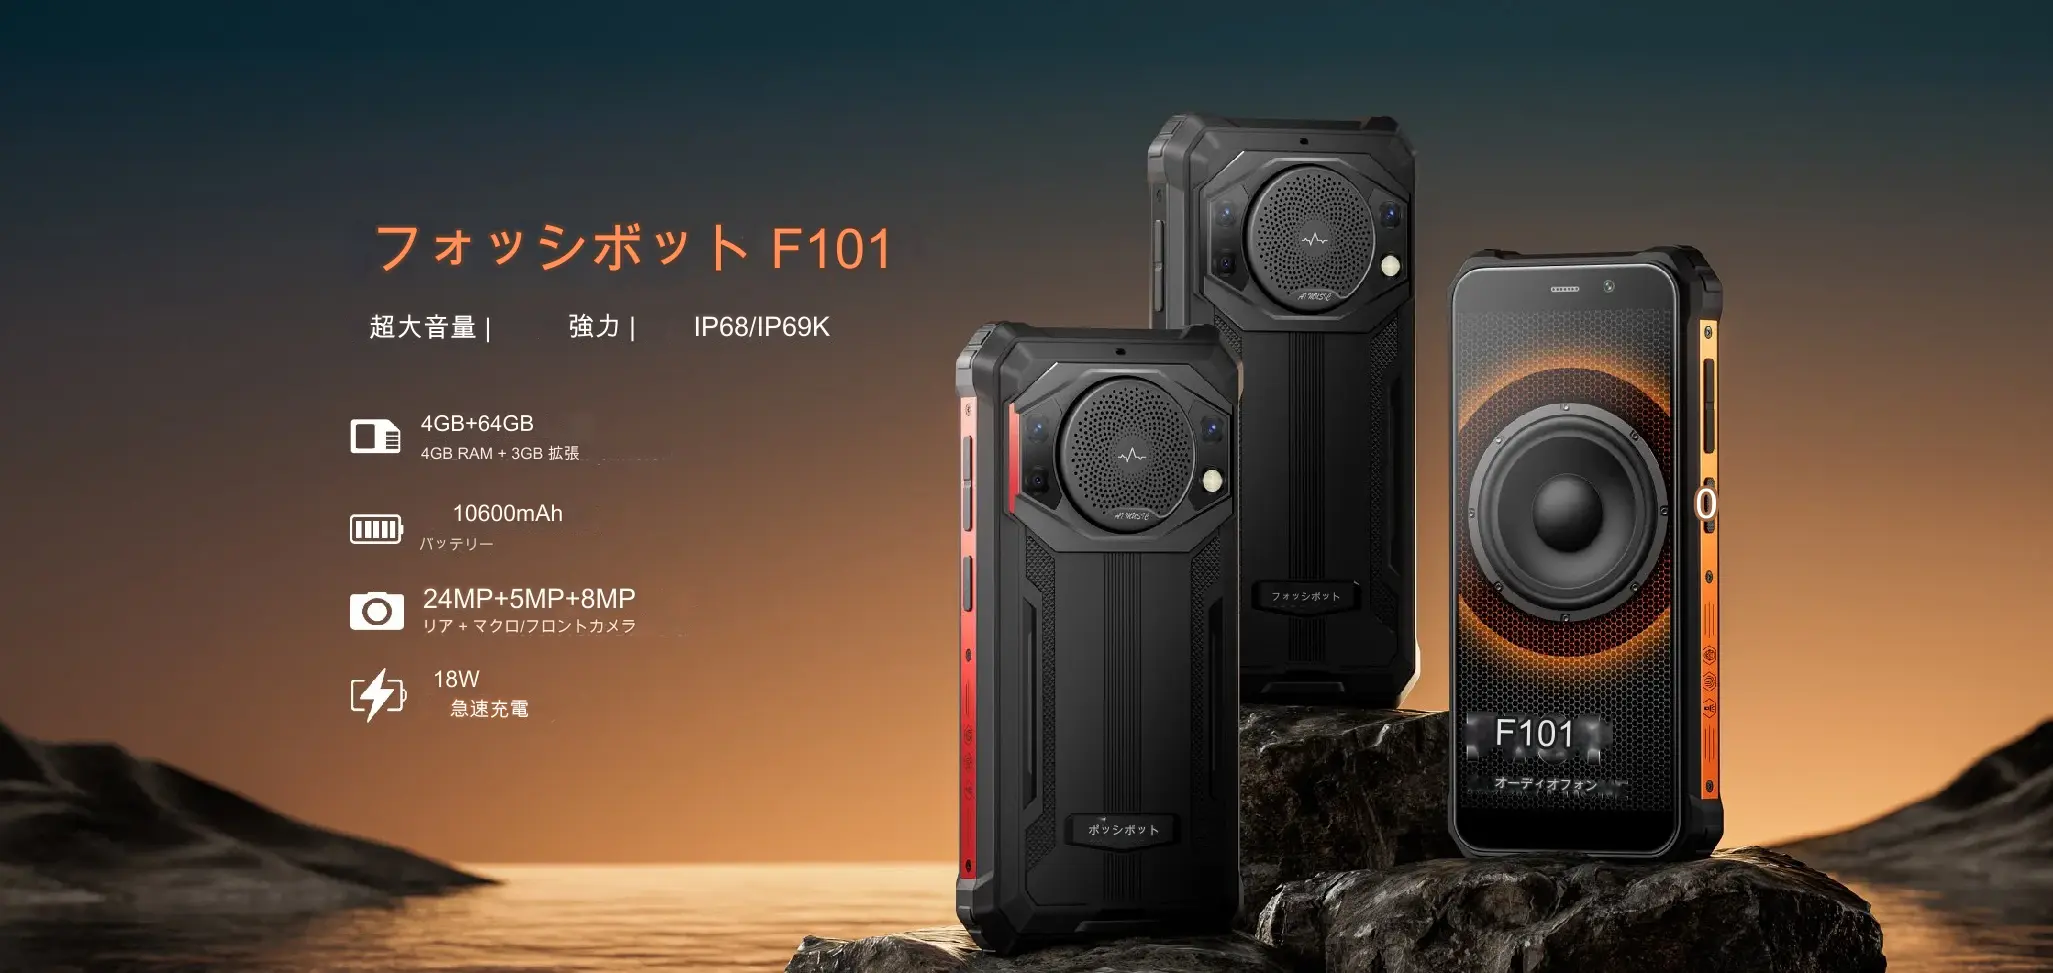 FossiBotが保護スマートフォンF106 Proの販売開始を発表